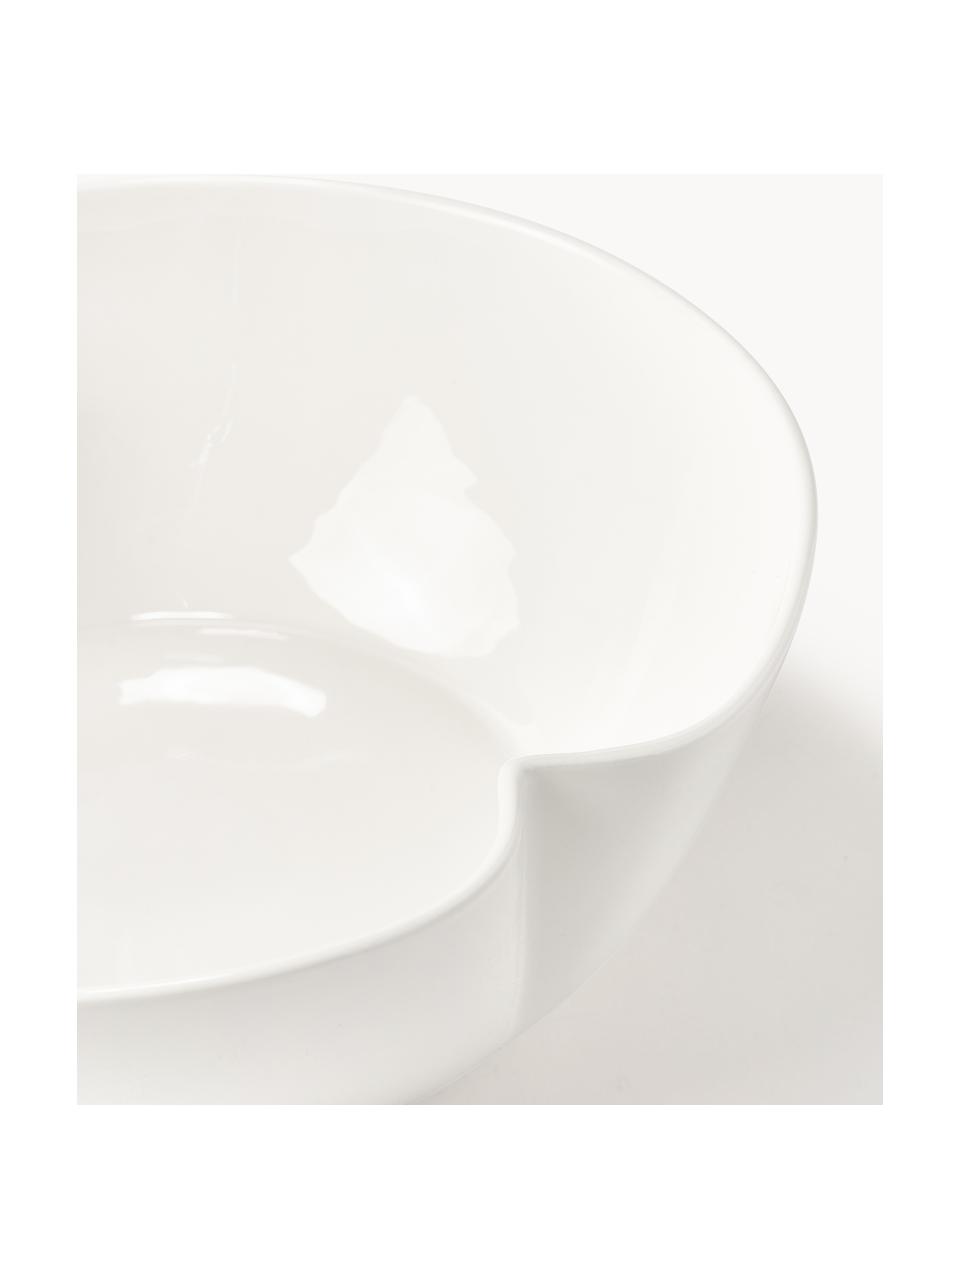 Porzellan-Servierschüssel Nera, Porzellan, glasiert, Weiß, glänzend, Ø 27 x H 10 cm